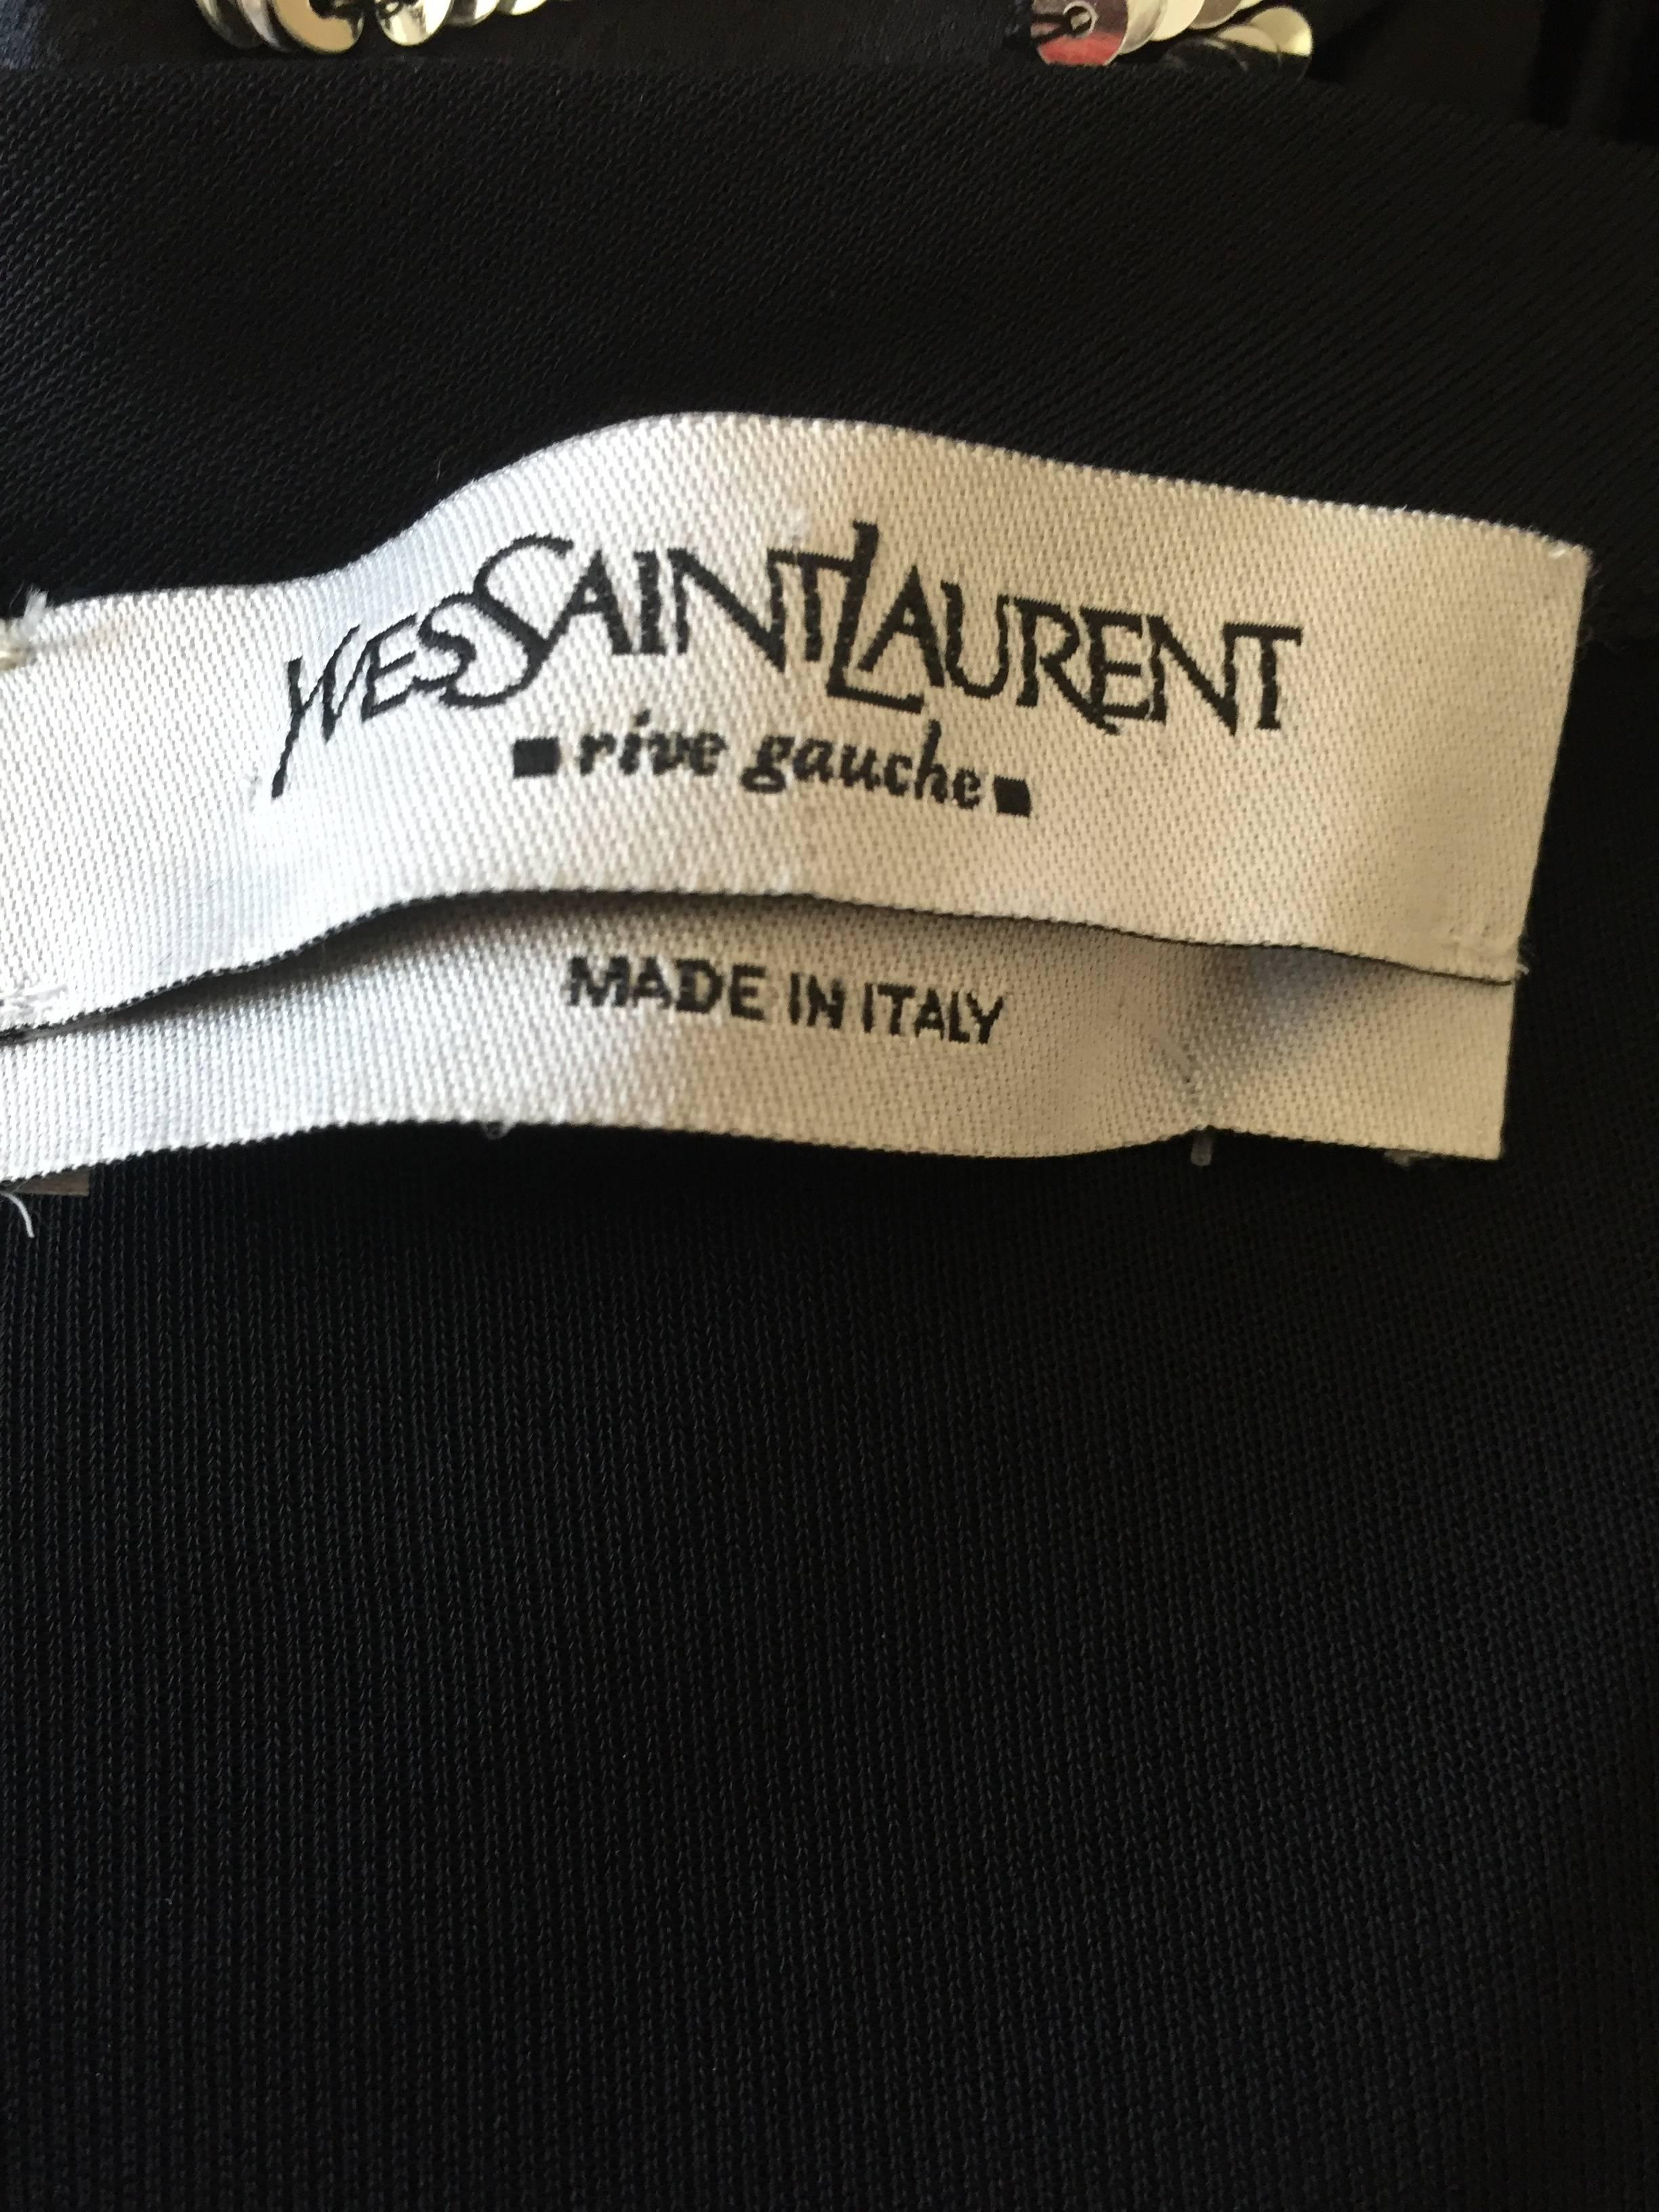 Women's Tom Ford Yves Saint Laurent Bell Sleeve Dress